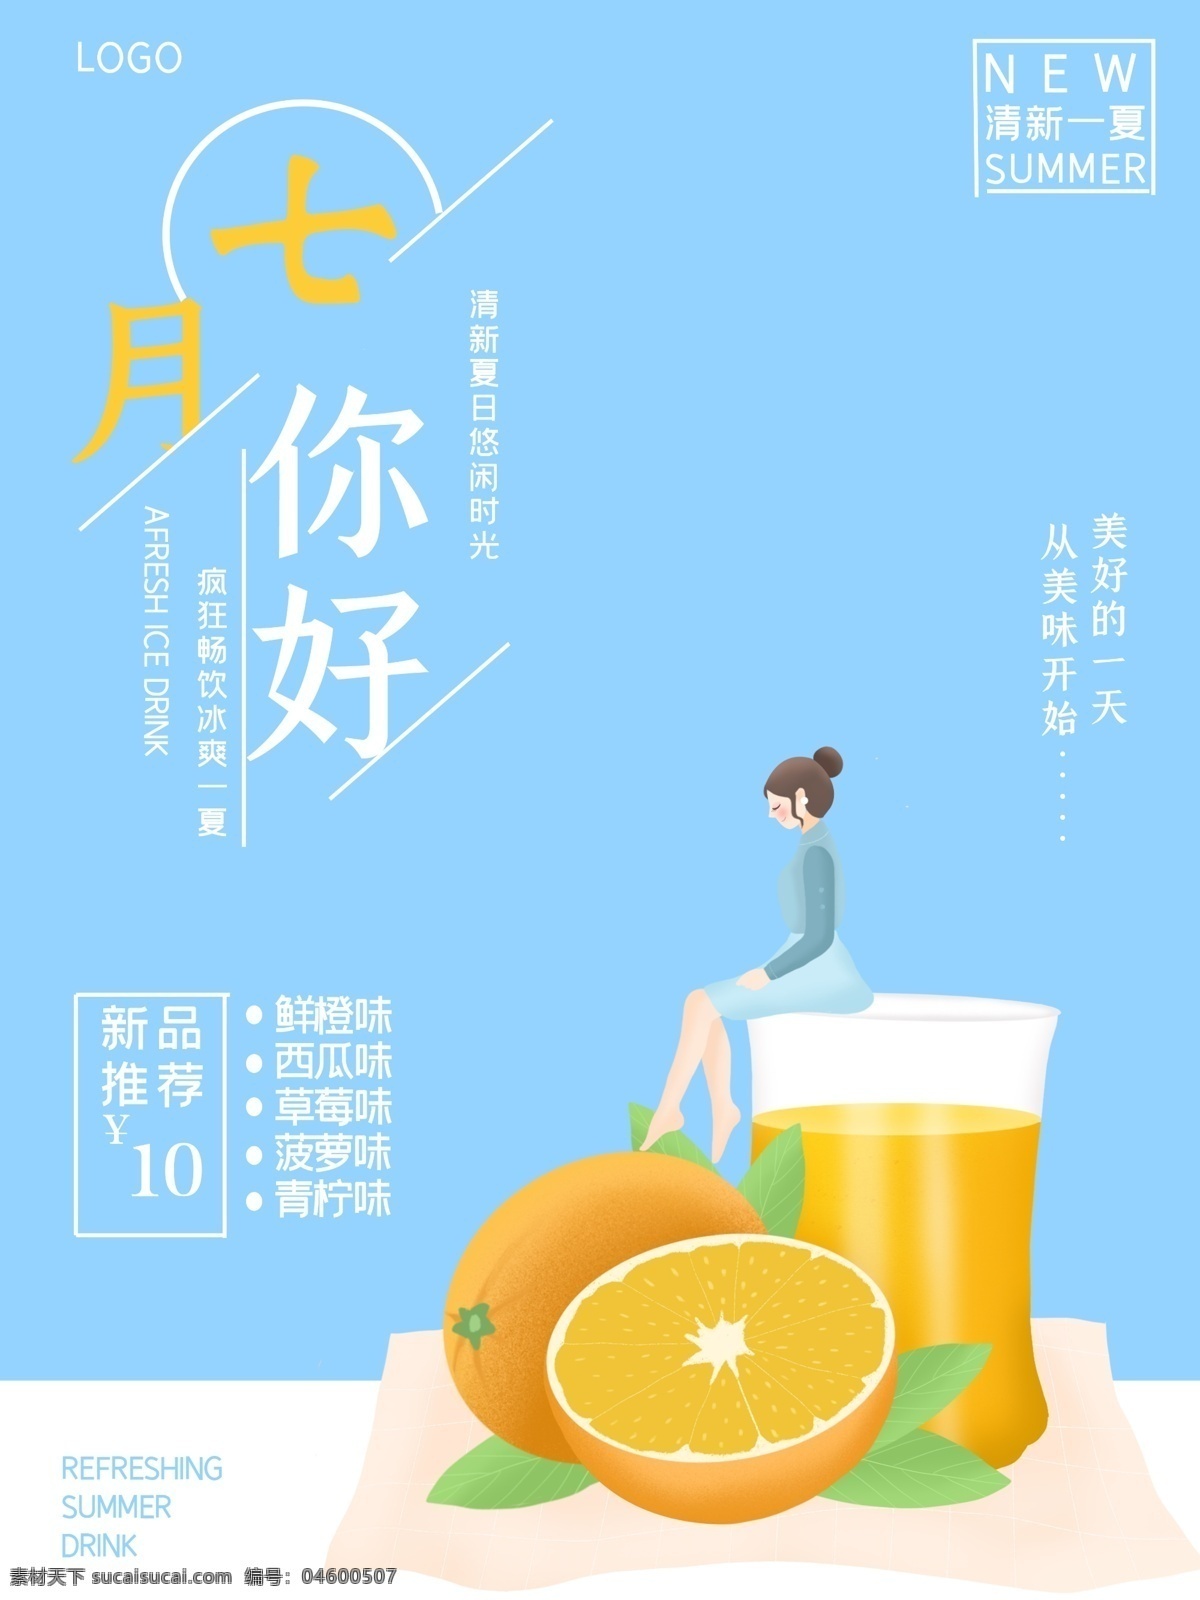 夏天 夏日特饮 饮料 促销 奶茶促销 优惠活动 海报 小清新 橙子 橙汁